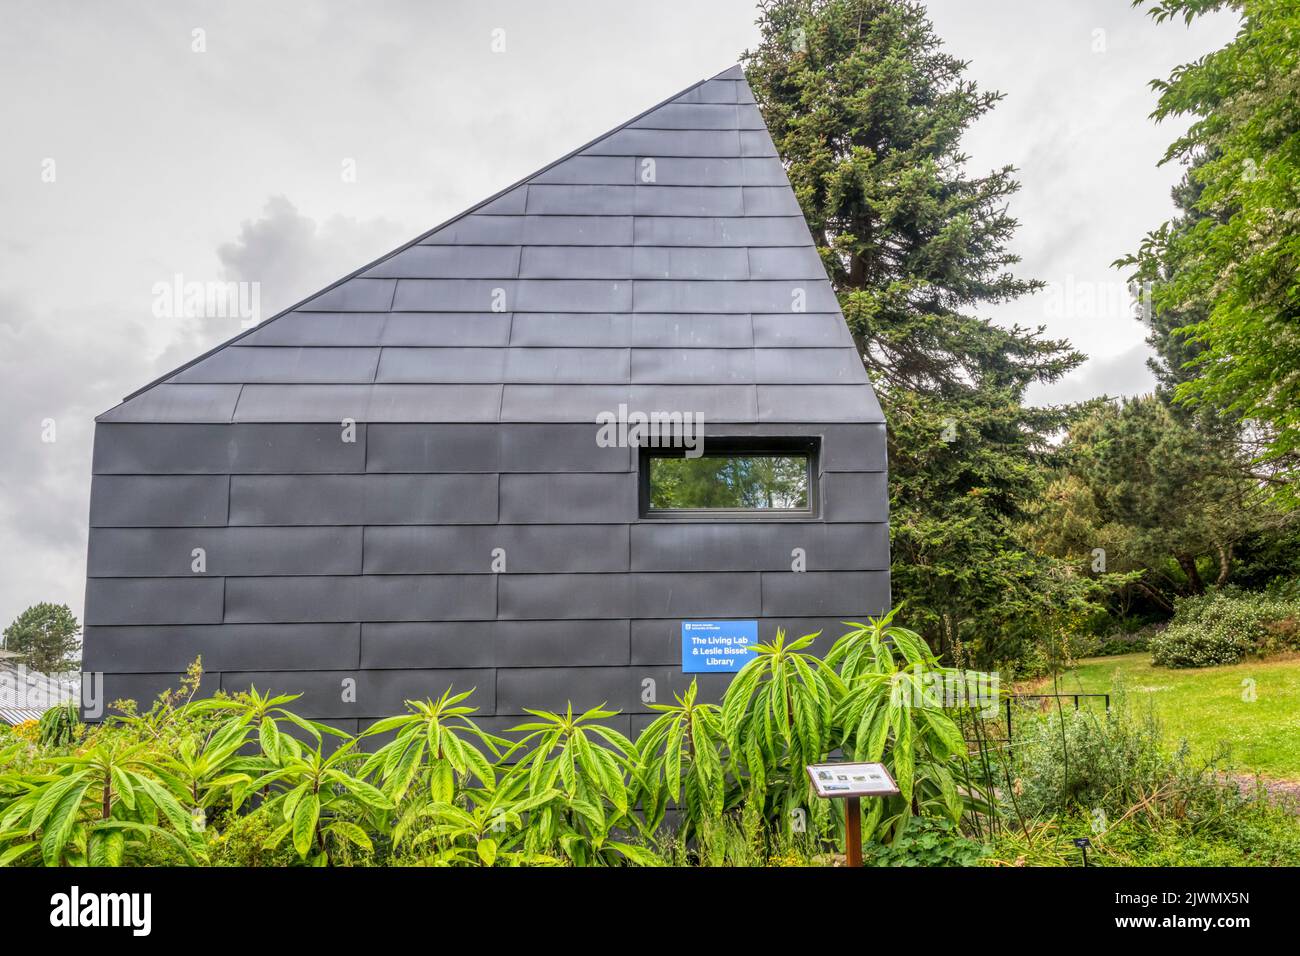 Il Macro Micro Studio presso l'Università di Dundee Botanic Gardens è un edificio fuori rete costruito secondo gli standard Passivhaus come unità dimostrativa. Foto Stock